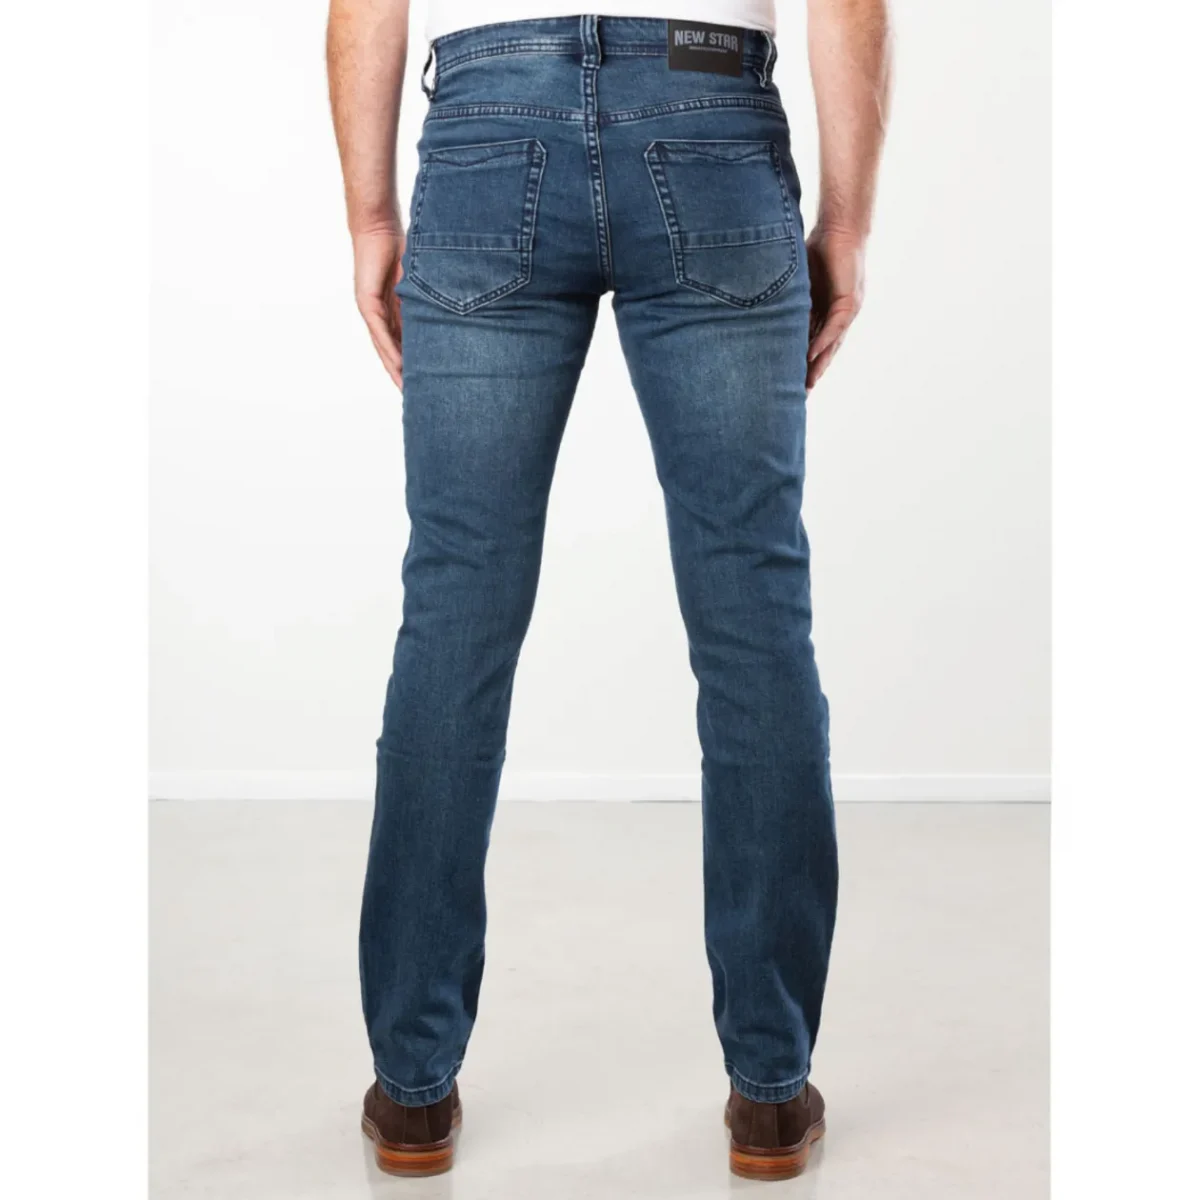 Pogo stick sprong Biscuit Veilig Slim fit jeans heren voor de strakke en coole look | Broeken Binkie